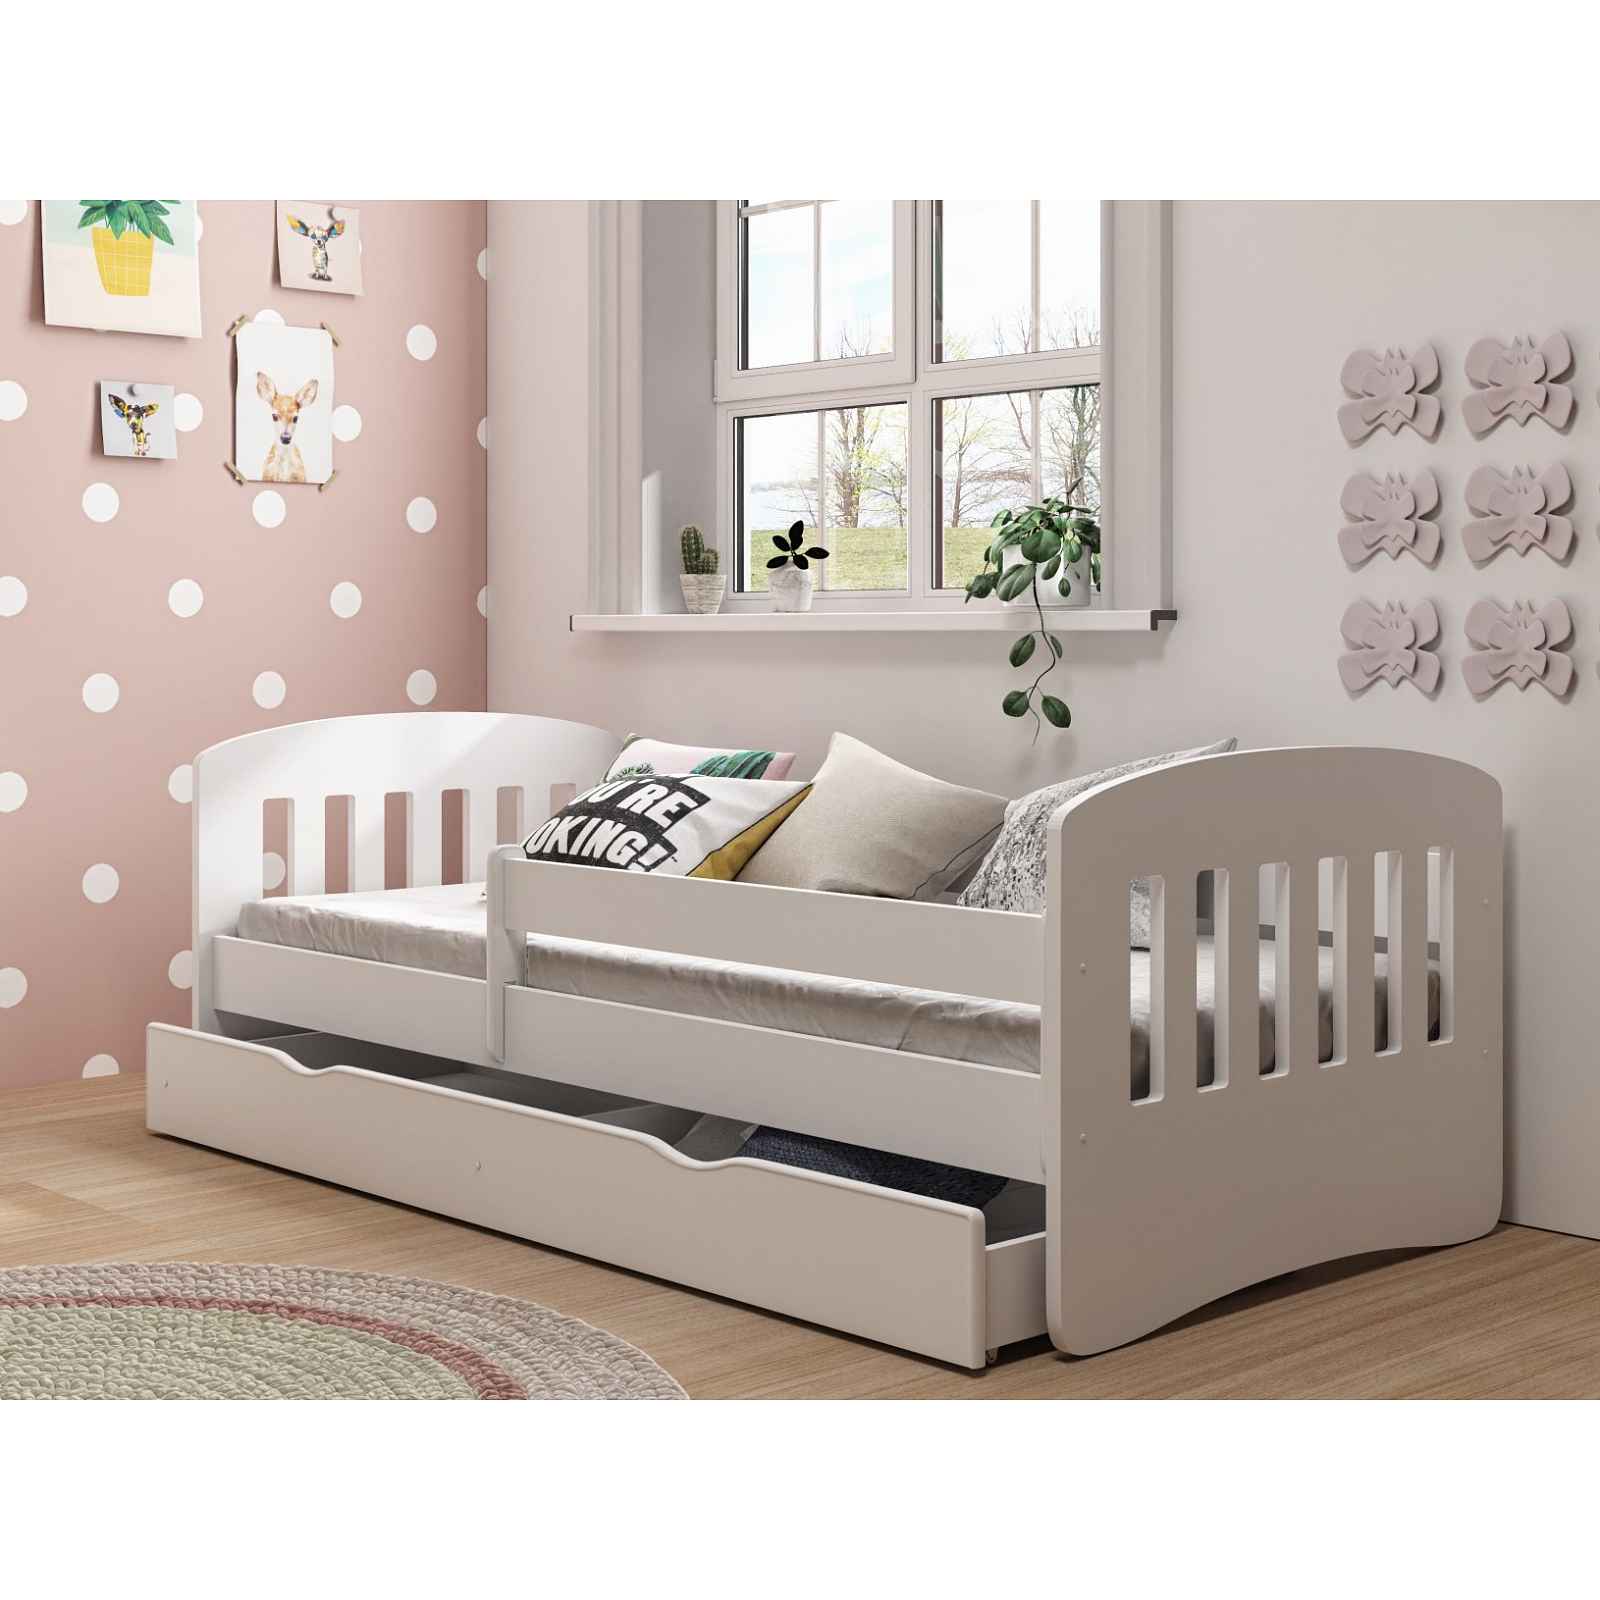 Dětská postel CLASSIC 1 80x140 cm, bílá - CLASSIC 1 bed without mattrress